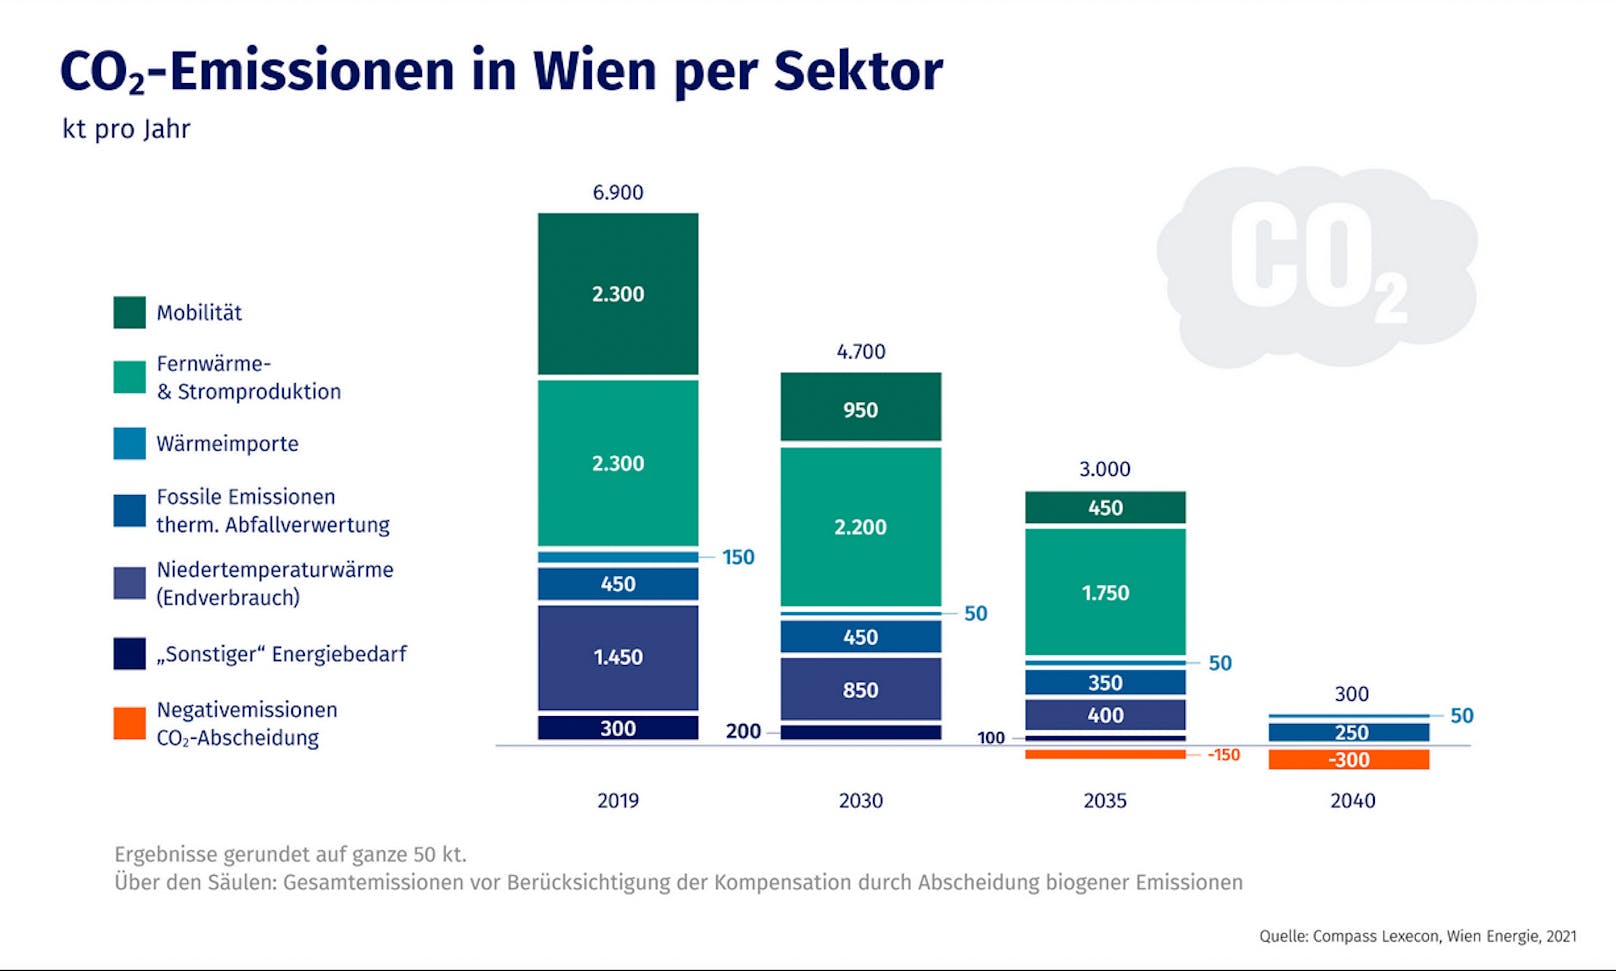 CO2-Emissionen per Sektor in Wien